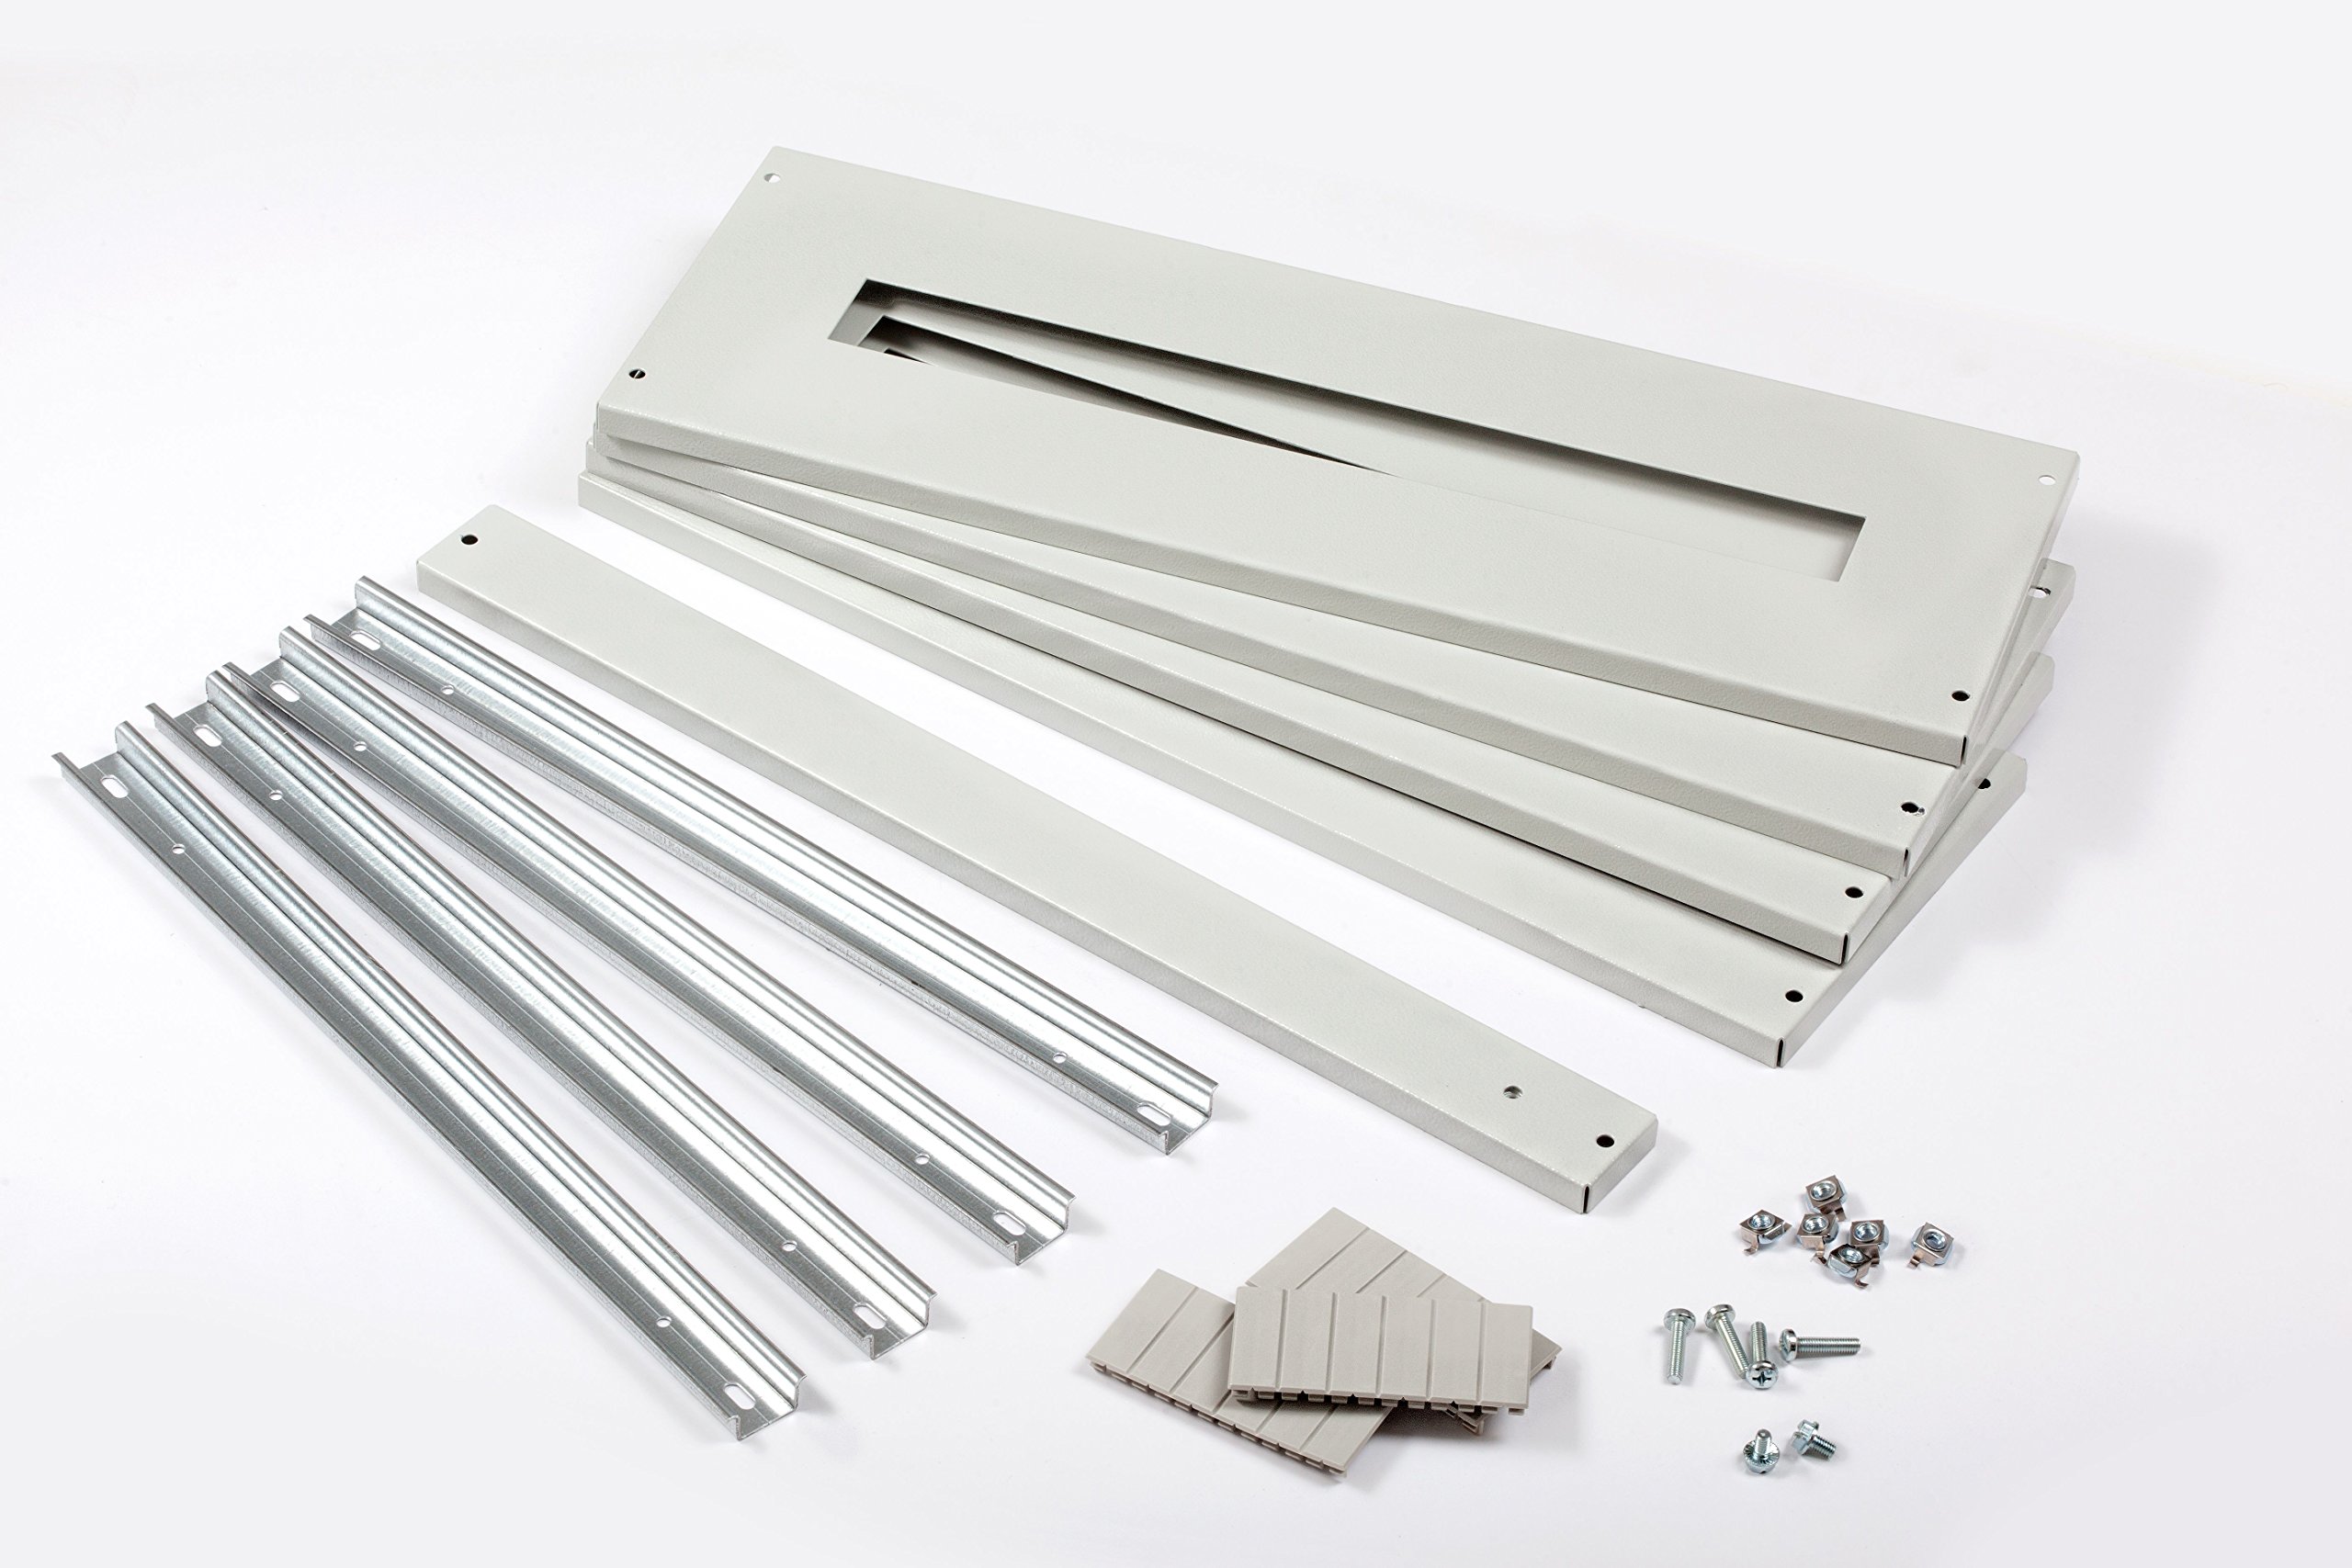 IDE S120M200 Metallkappen-Set für Oberflächenschränke, 65SUP120-168PO-PT, 120 modulare Kapazität, Weiß.